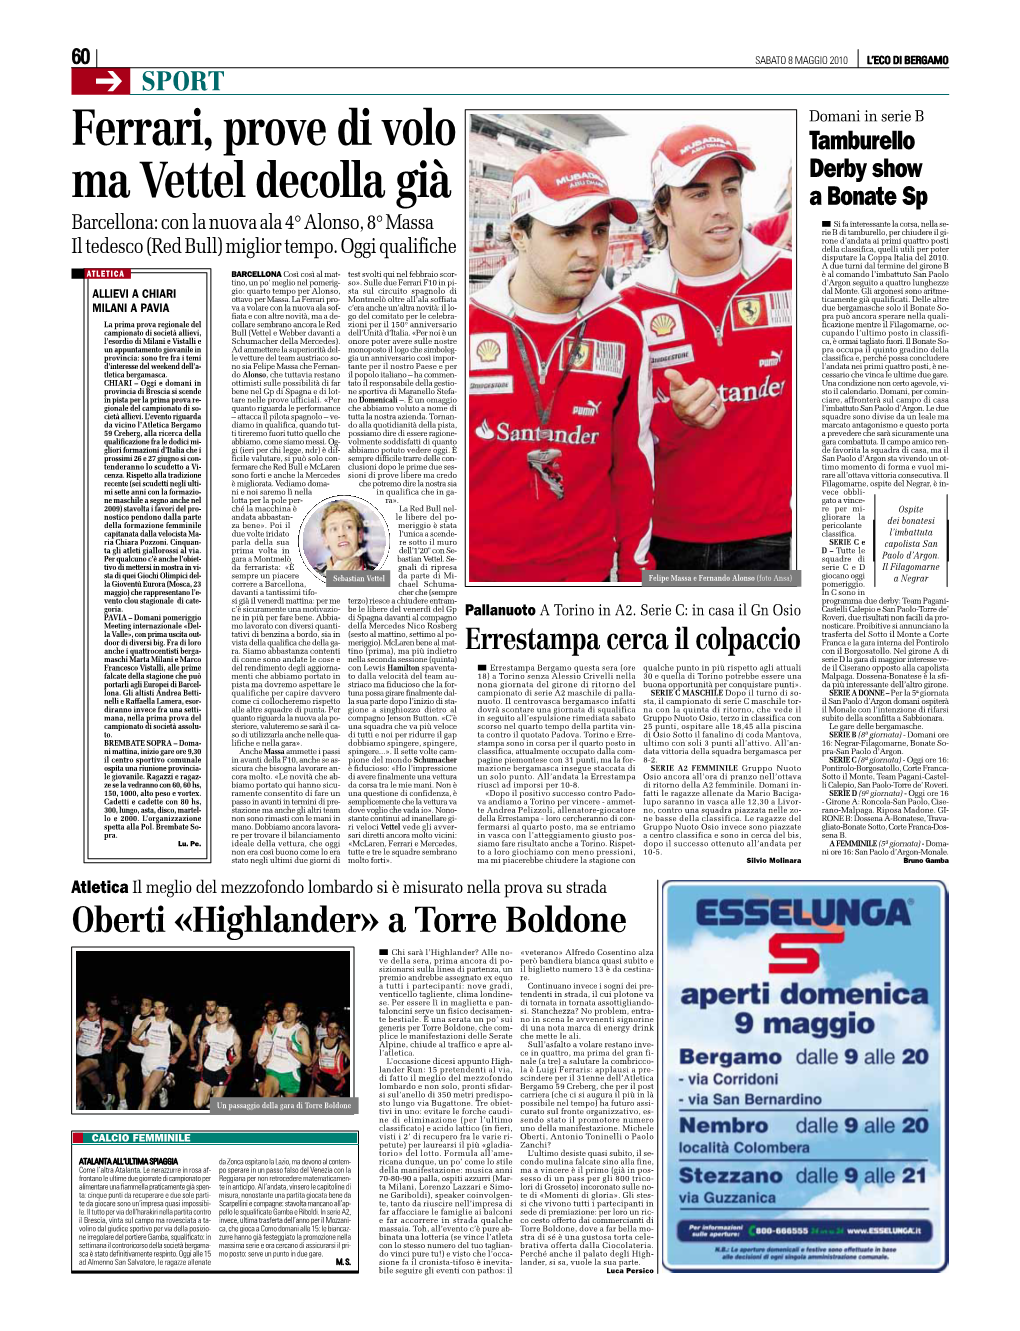 Ferrari, Prove Di Volo Ma Vettel Decolla